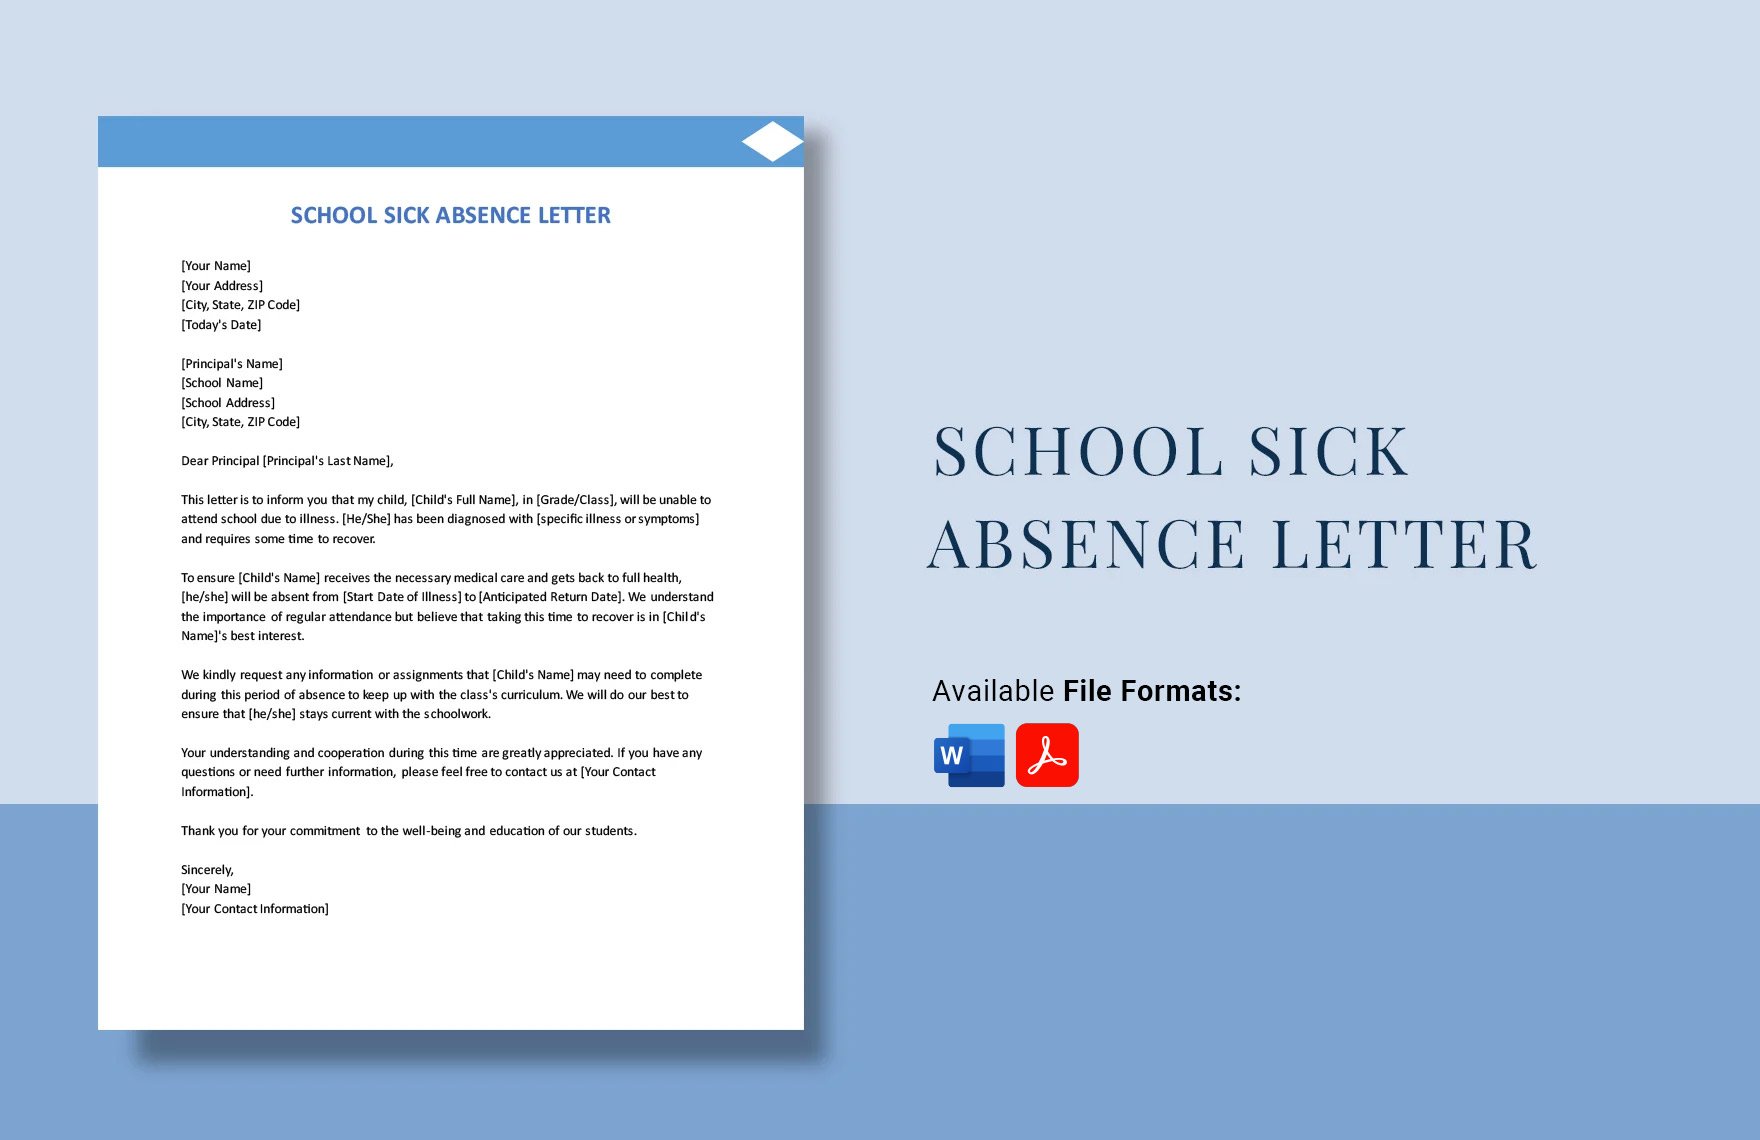 School Sick Absence Letter in Word, PDF